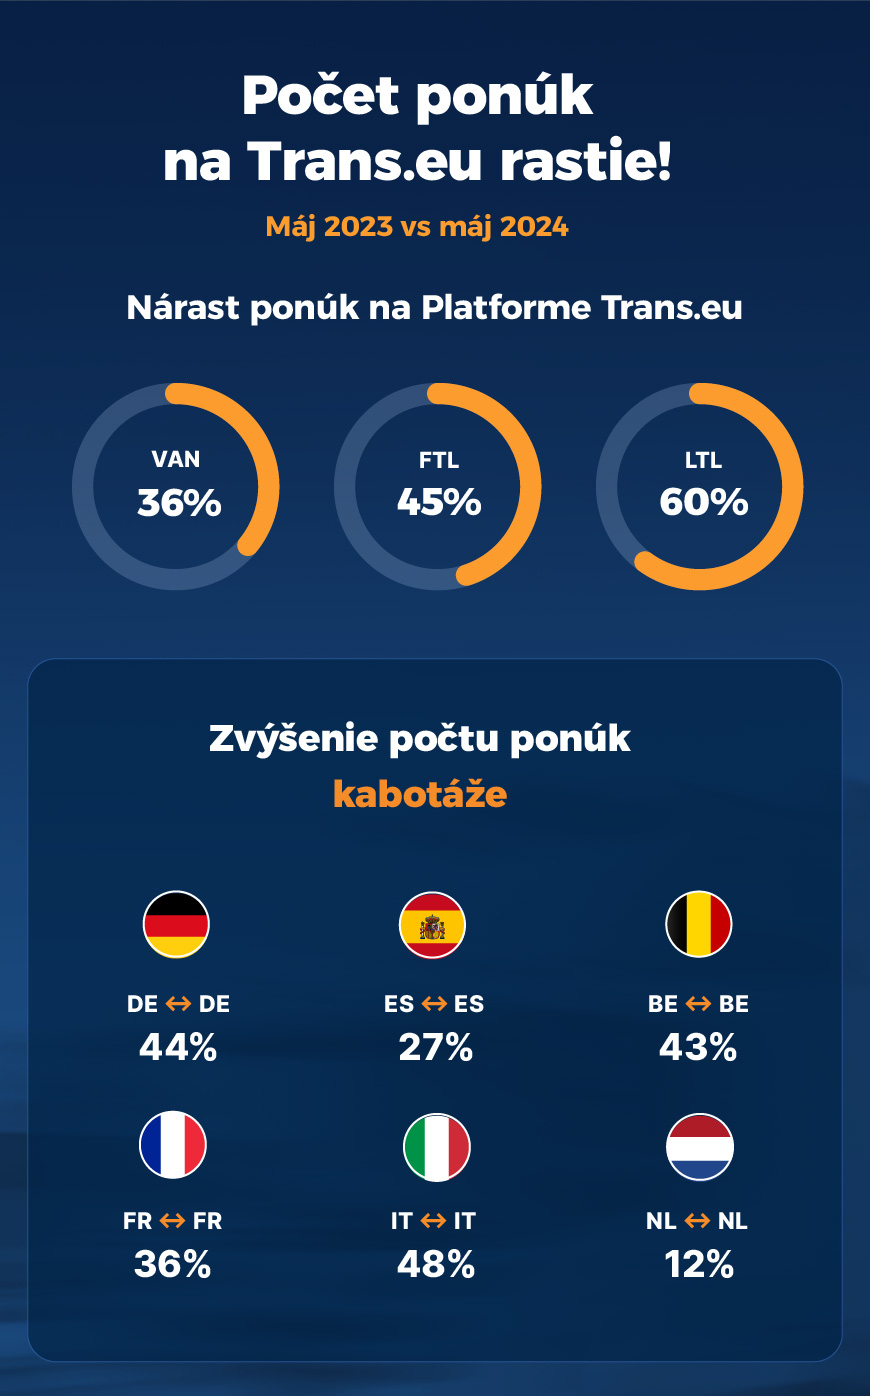 Počet ponúk na Trans.eu rastie!
Nárast ponúk na Platforme Trans.eu
Zvýšenie počtu ponúk kabotáže